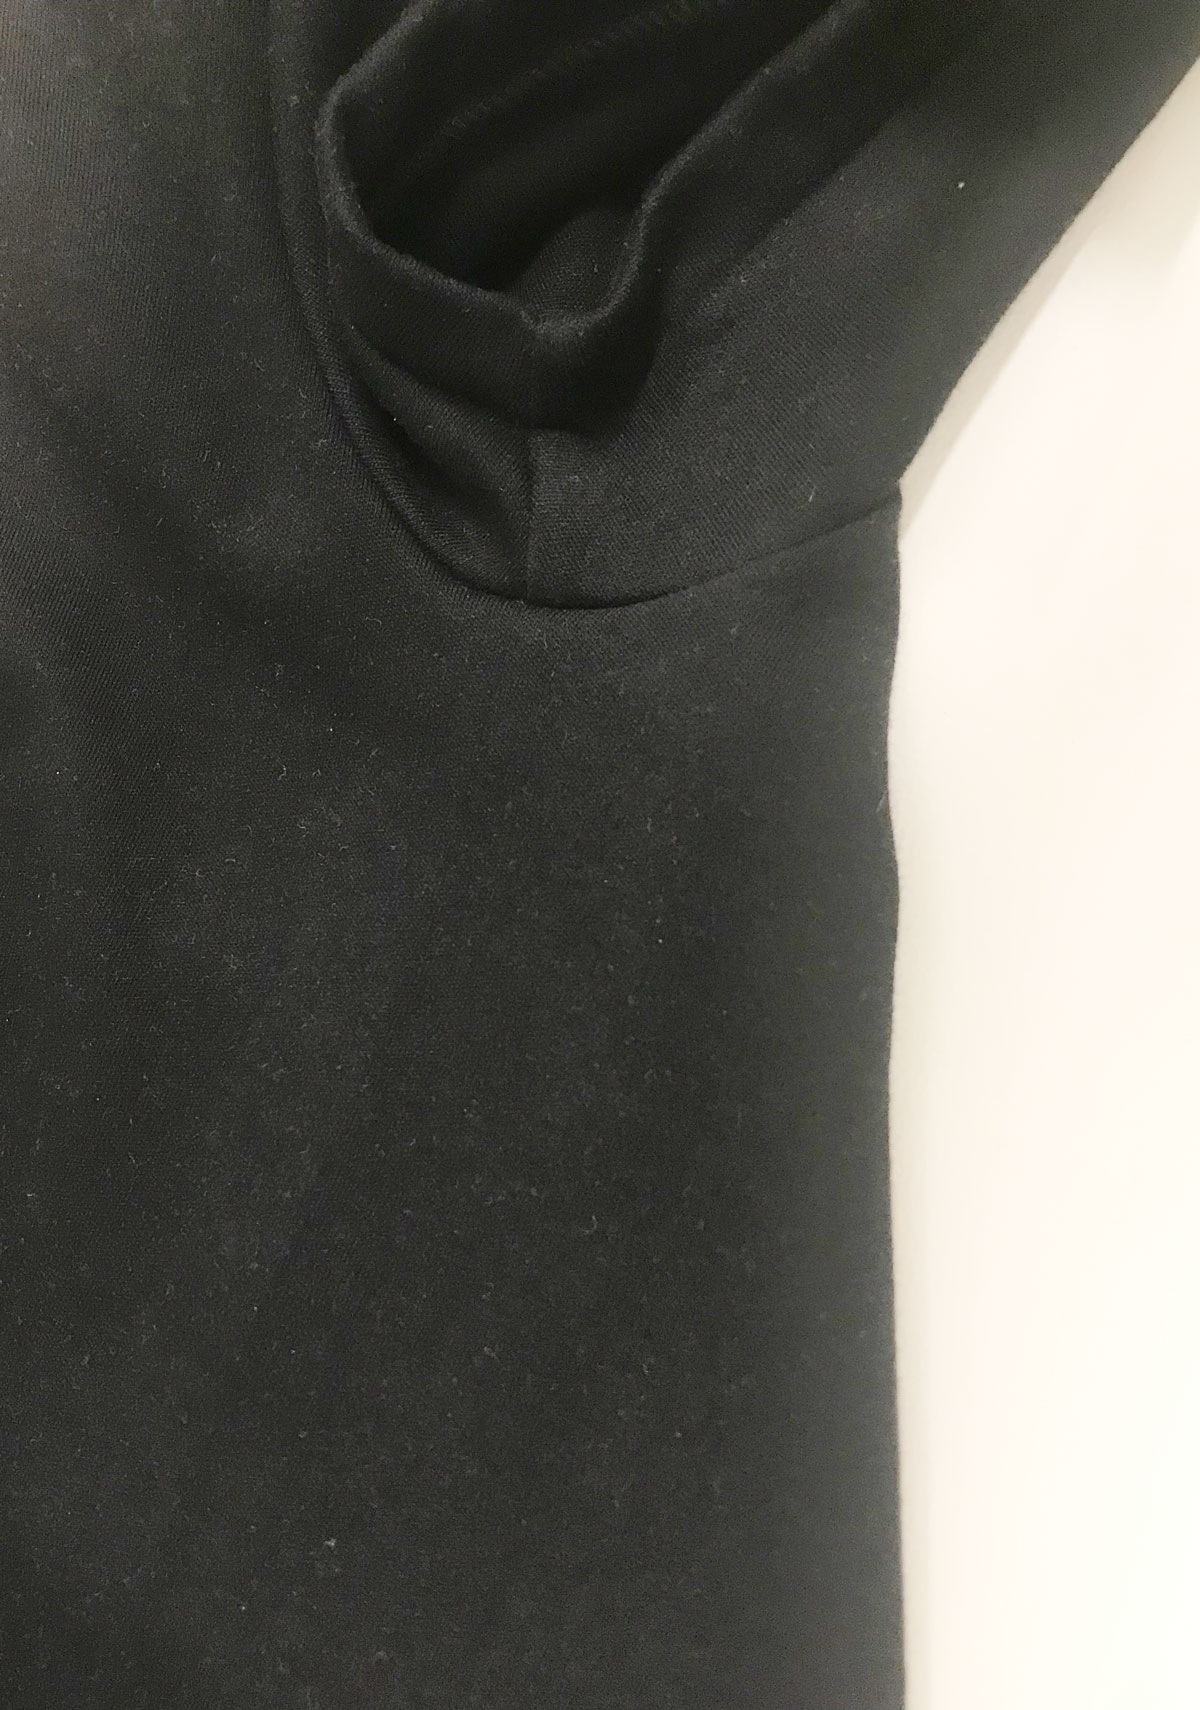 ixc.  (イクスシー) -  オリジナルルームウェア 半袖Tシャツ (MEN) ブラック